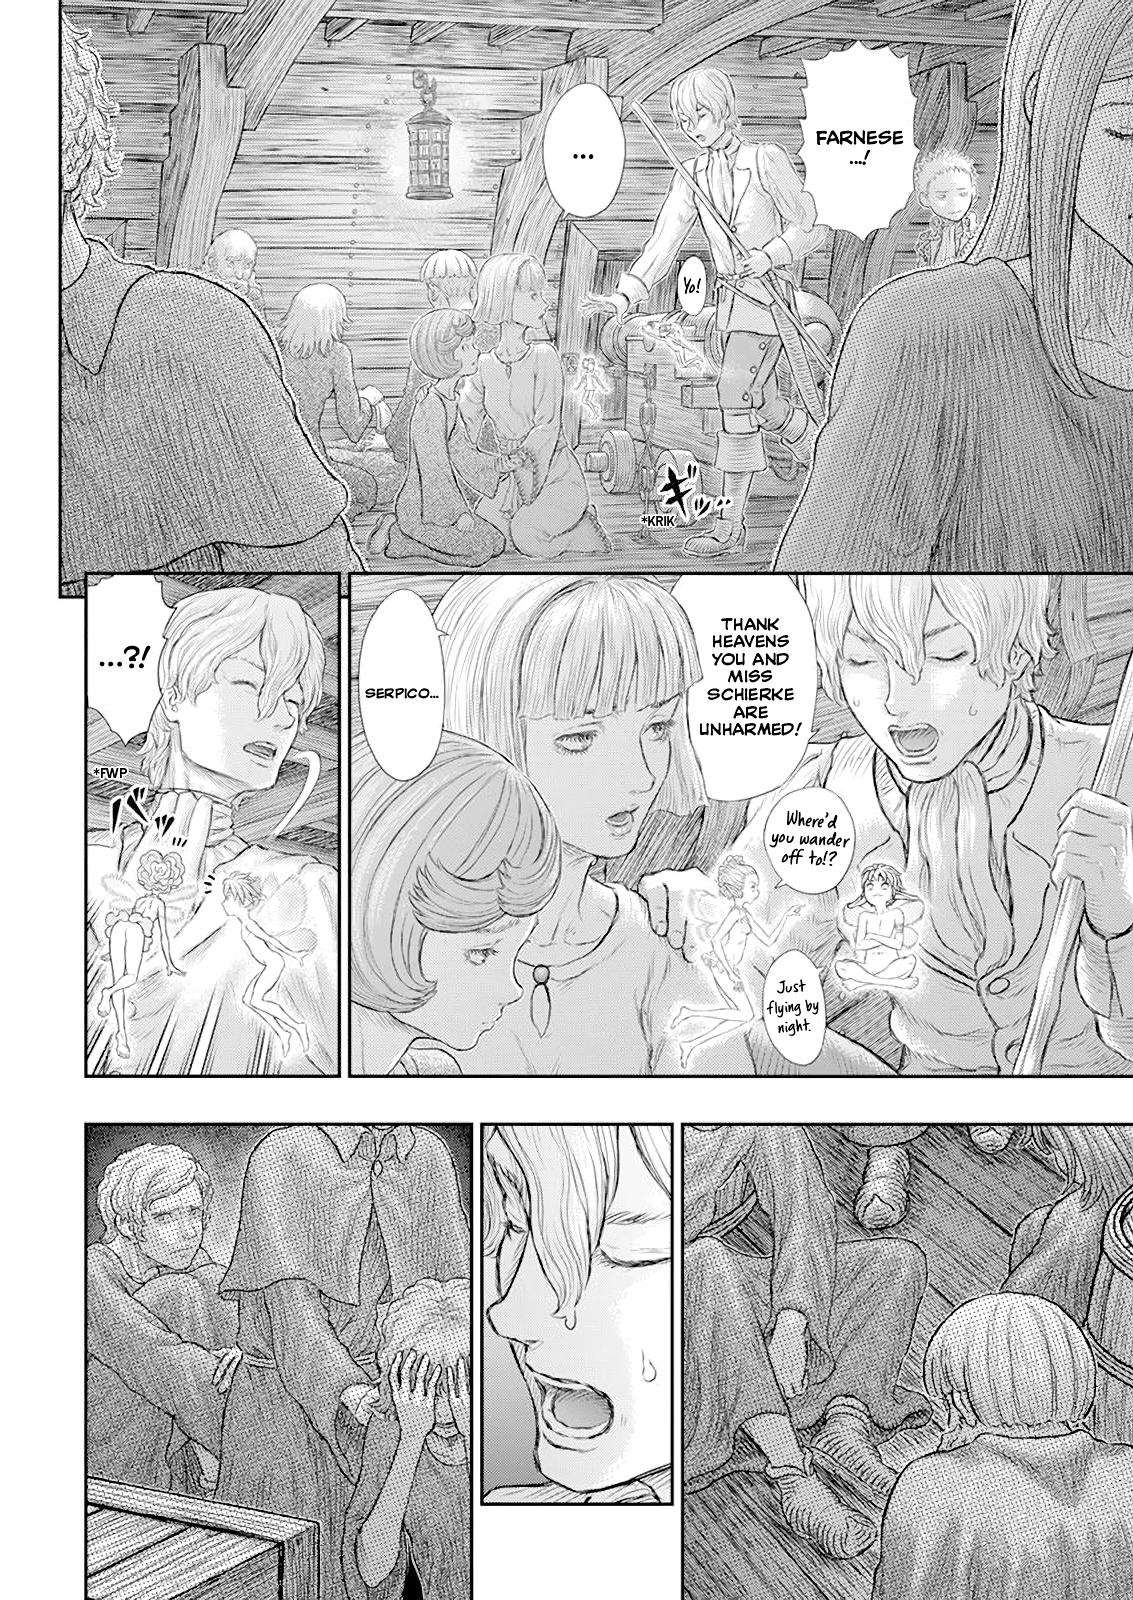 Berserk Manga Chapter 370 image 03